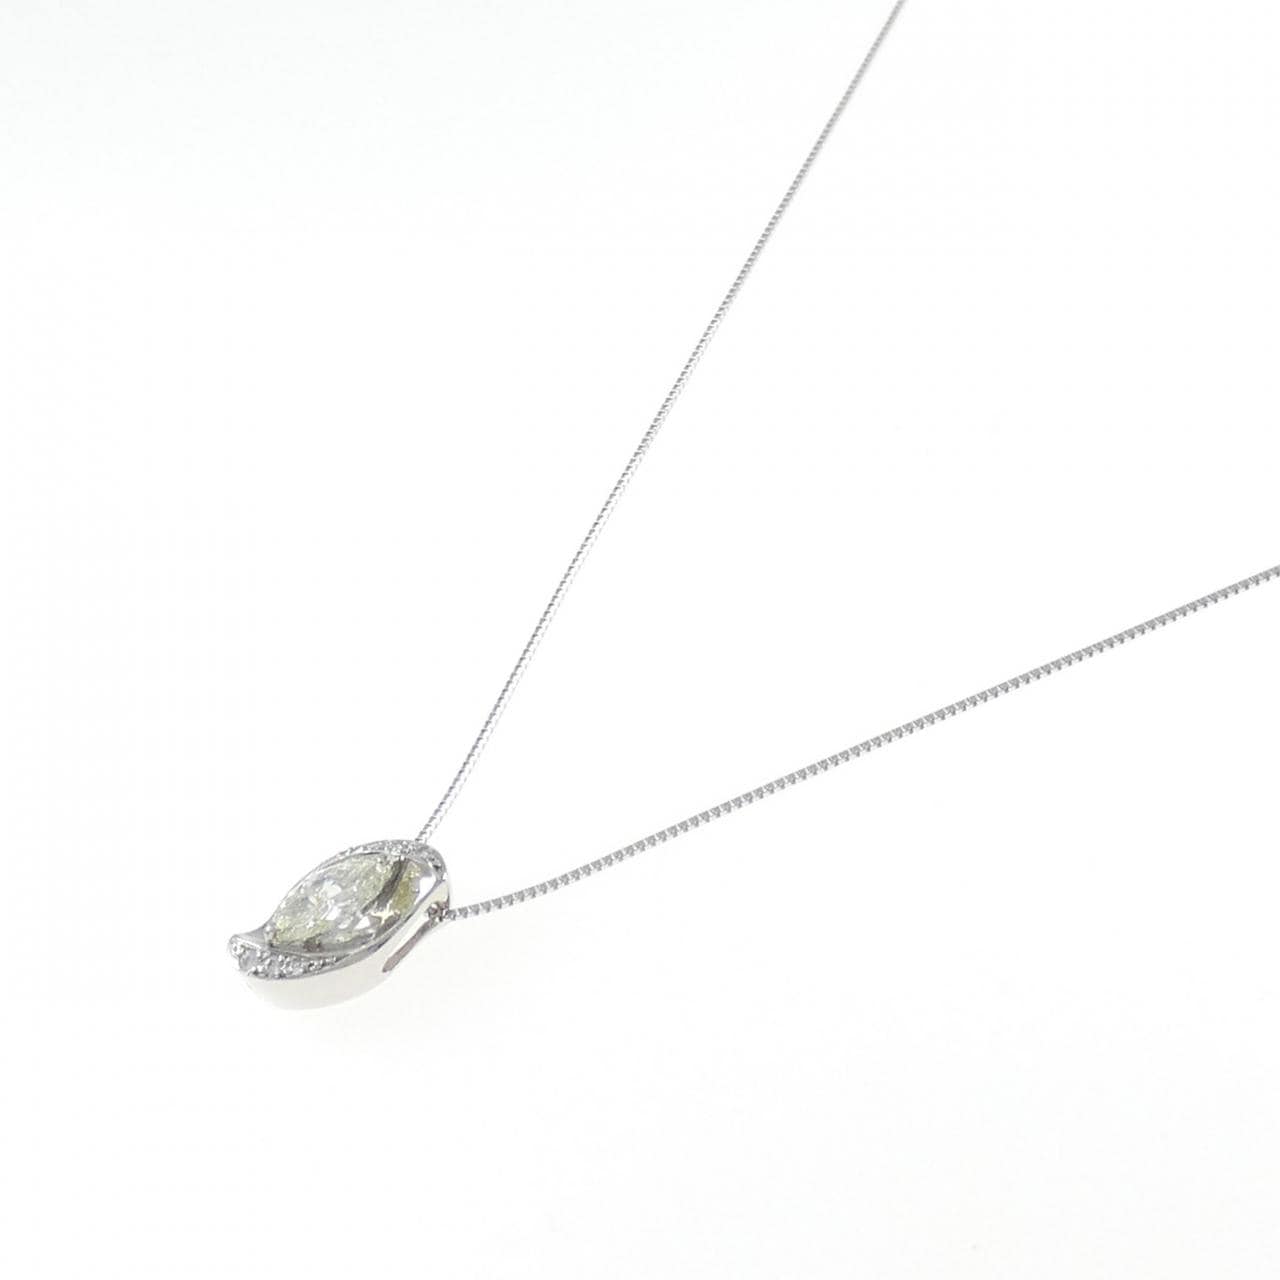 PT Diamond Necklace 0.704CT L VS2 Marquise Cut